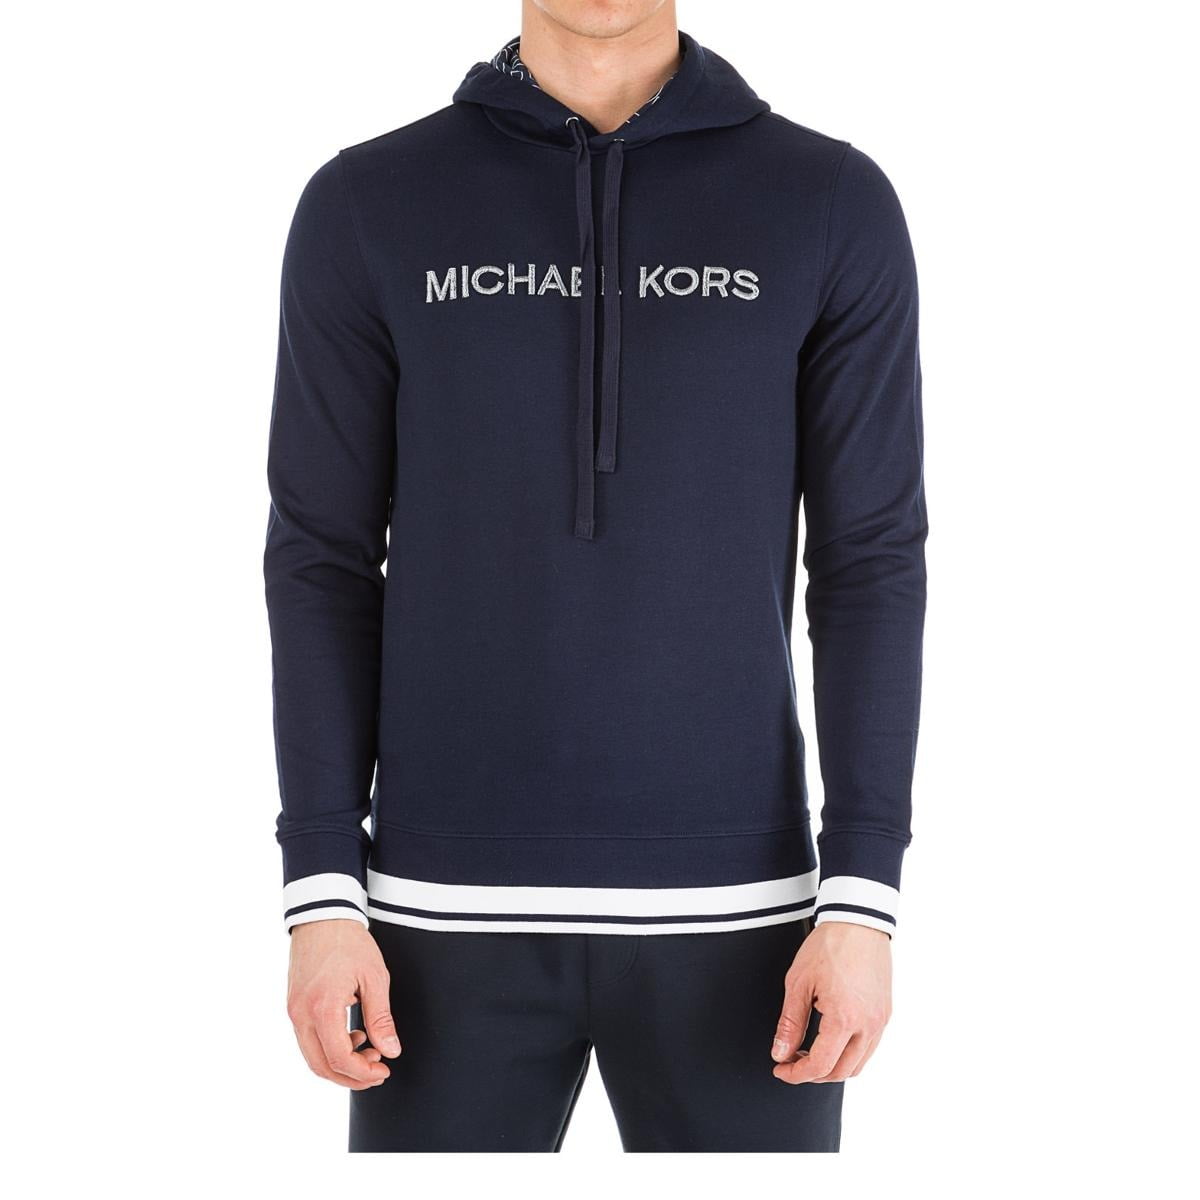  Michael  Kors Hoodies  Sweatshirts Mens Hoodie  Navy 